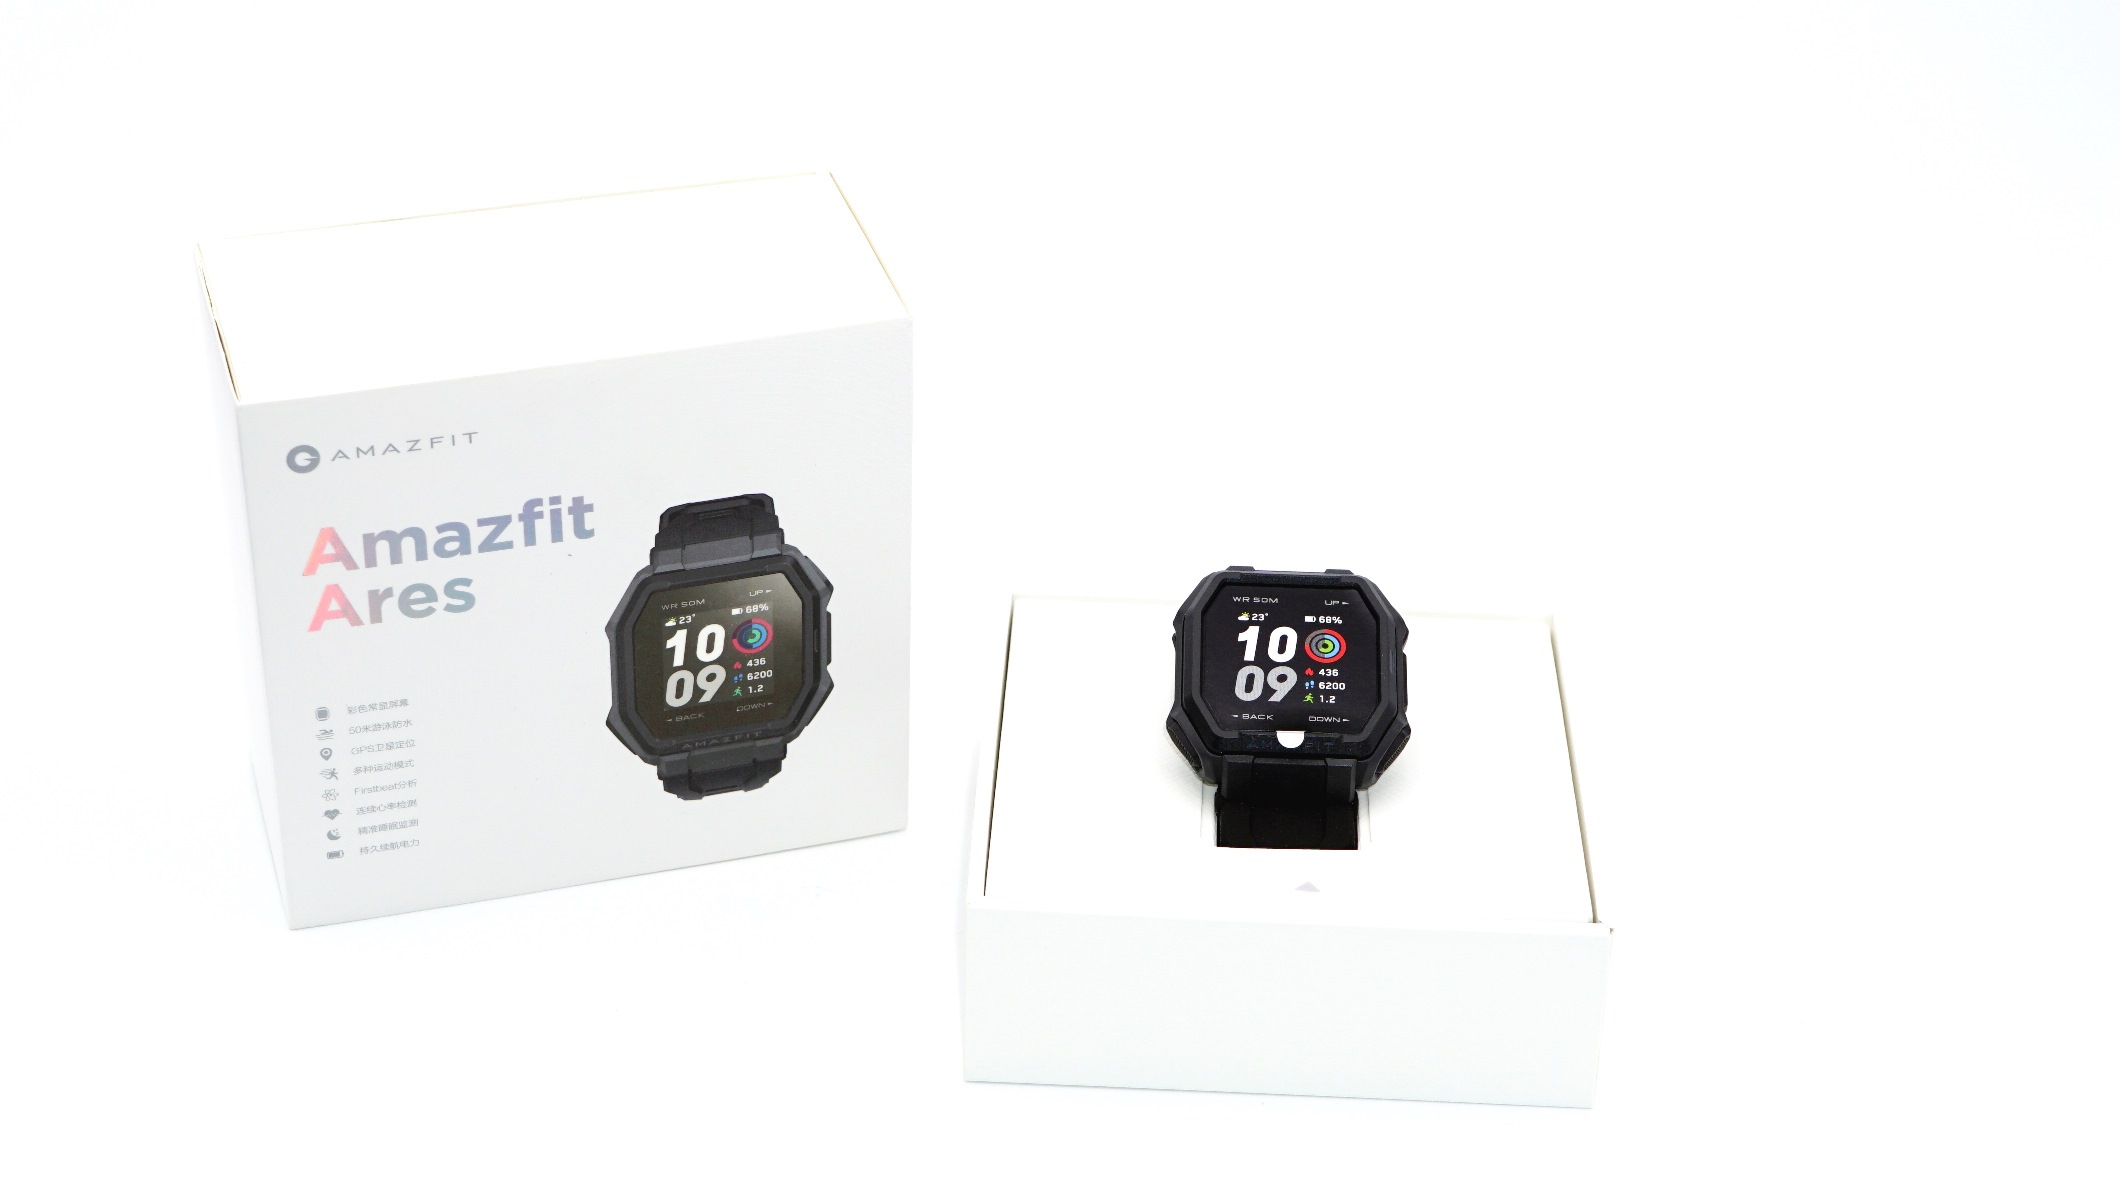 Новые защищенные смарт-часы Amazfit Ares: трансфлективный экран, защита 5атм, GPS / Гаджеты / iXBT Live